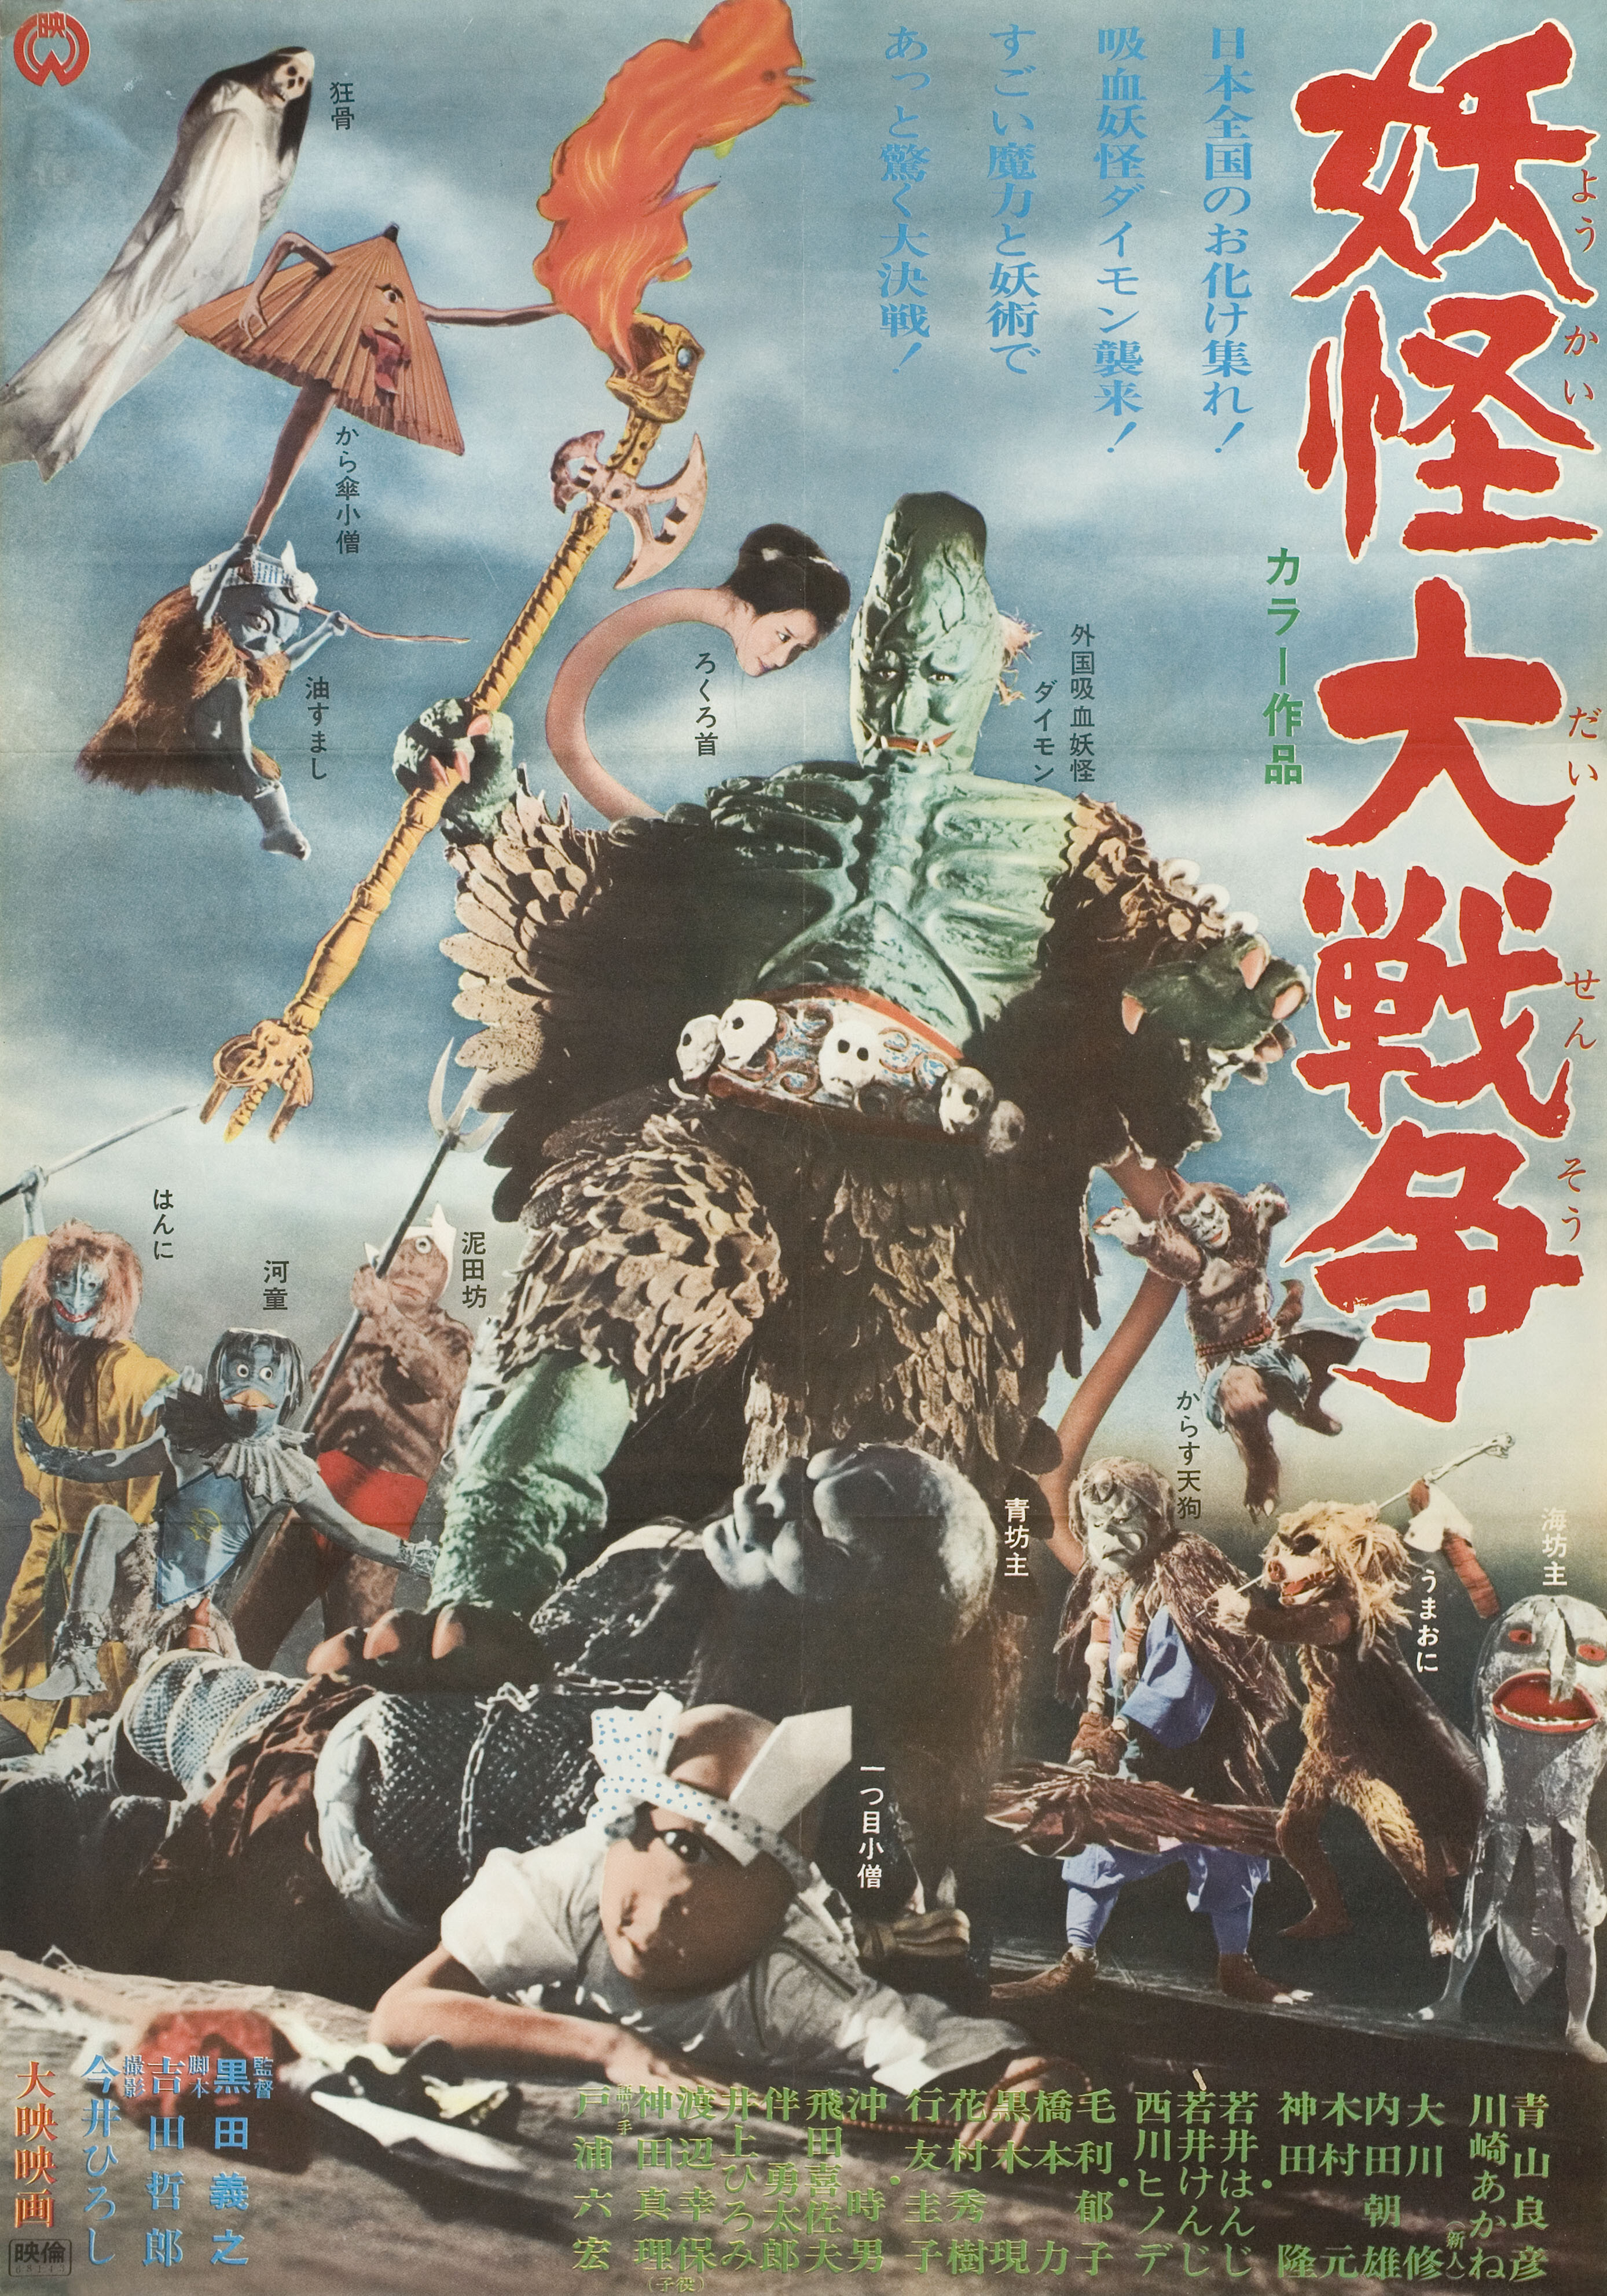 100 монстров (100 Monsters, 1968), режиссёр Кимиеси Ясуда, японский постер к фильму (ужасы, 1968 год)